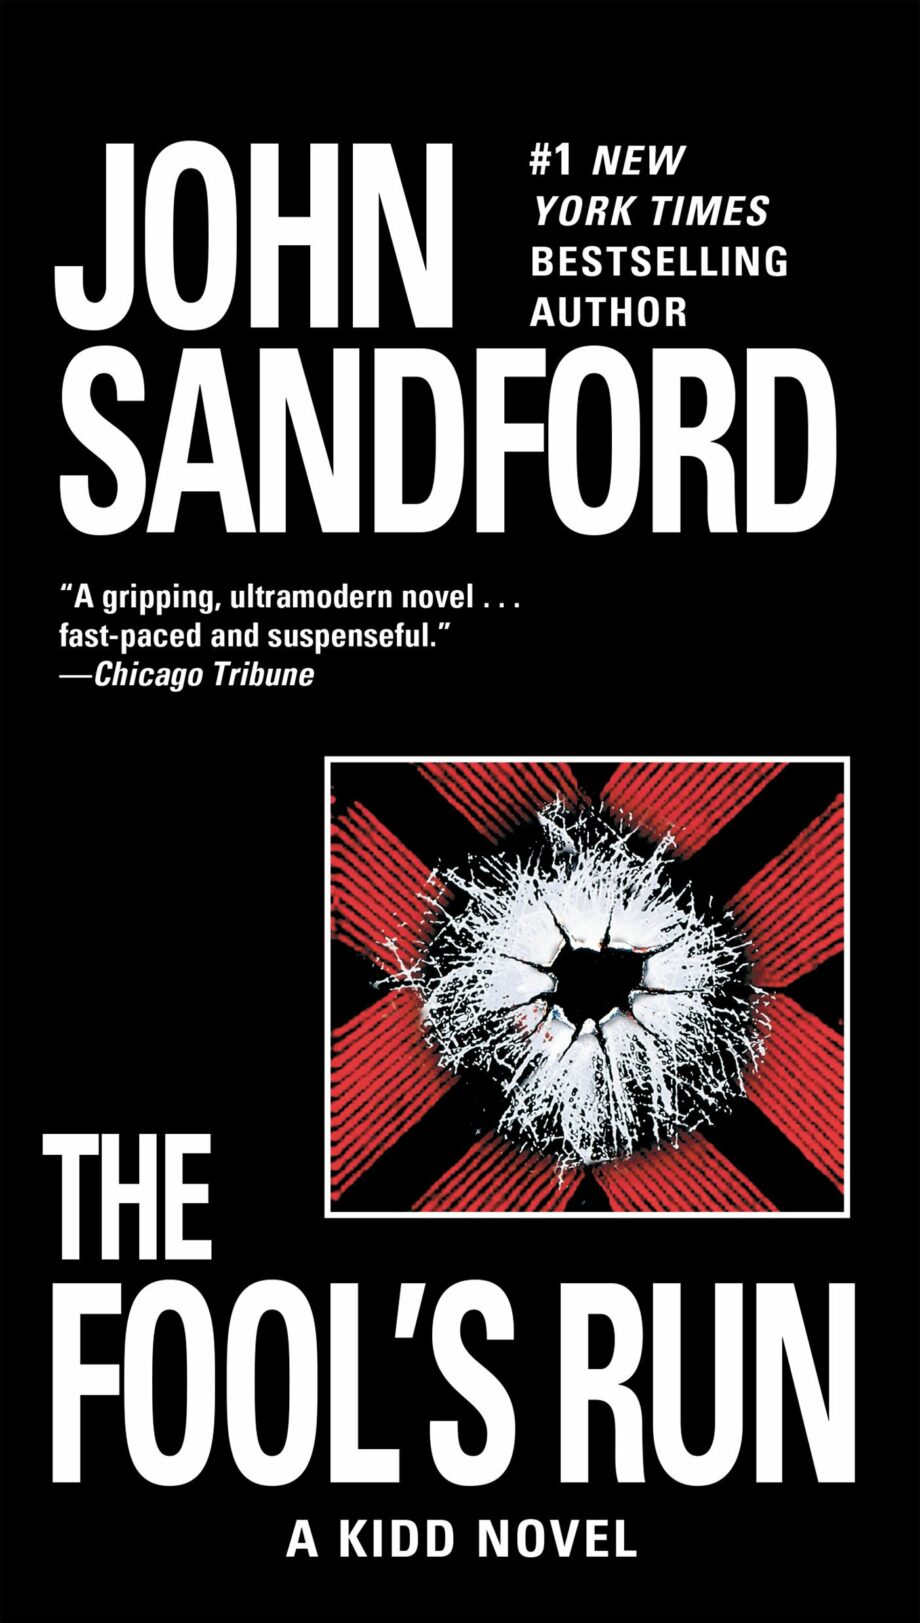 john-sandford-books-in-order-complete-guide-60-books